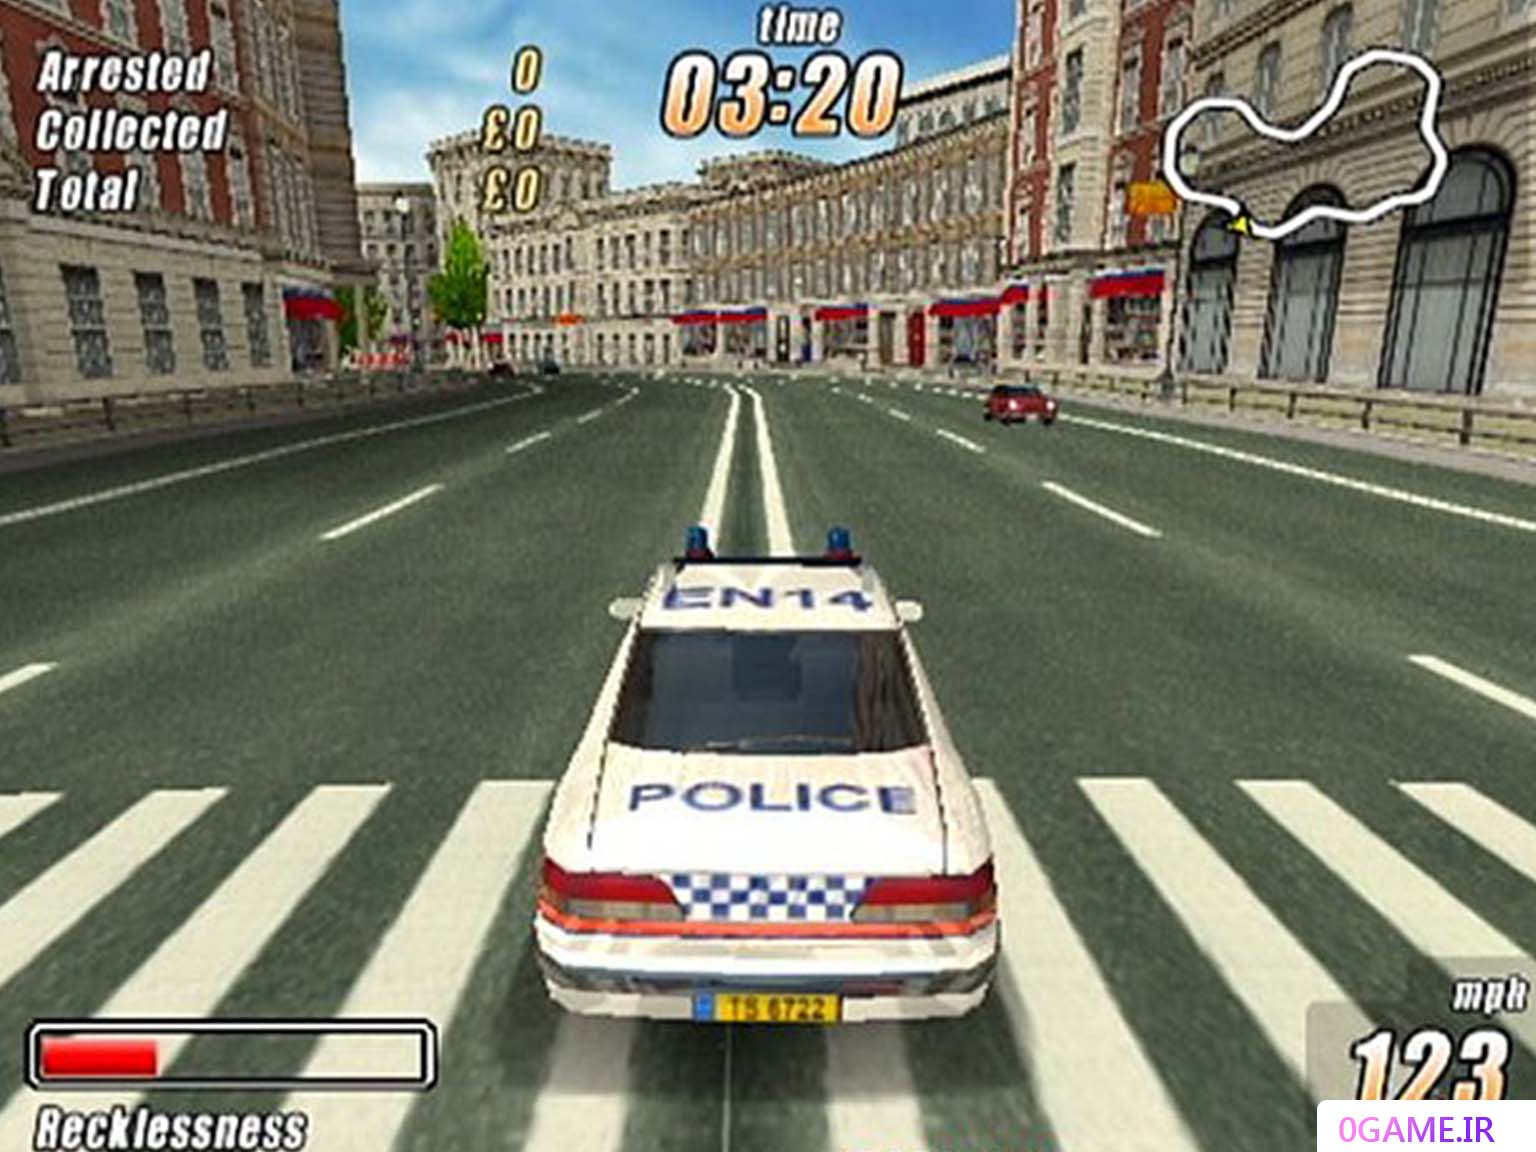 دانلود بازی لندن ریسیر : خشم پلیس (London Racer: Police Madness) نسخه کامل برای کامپیوتر